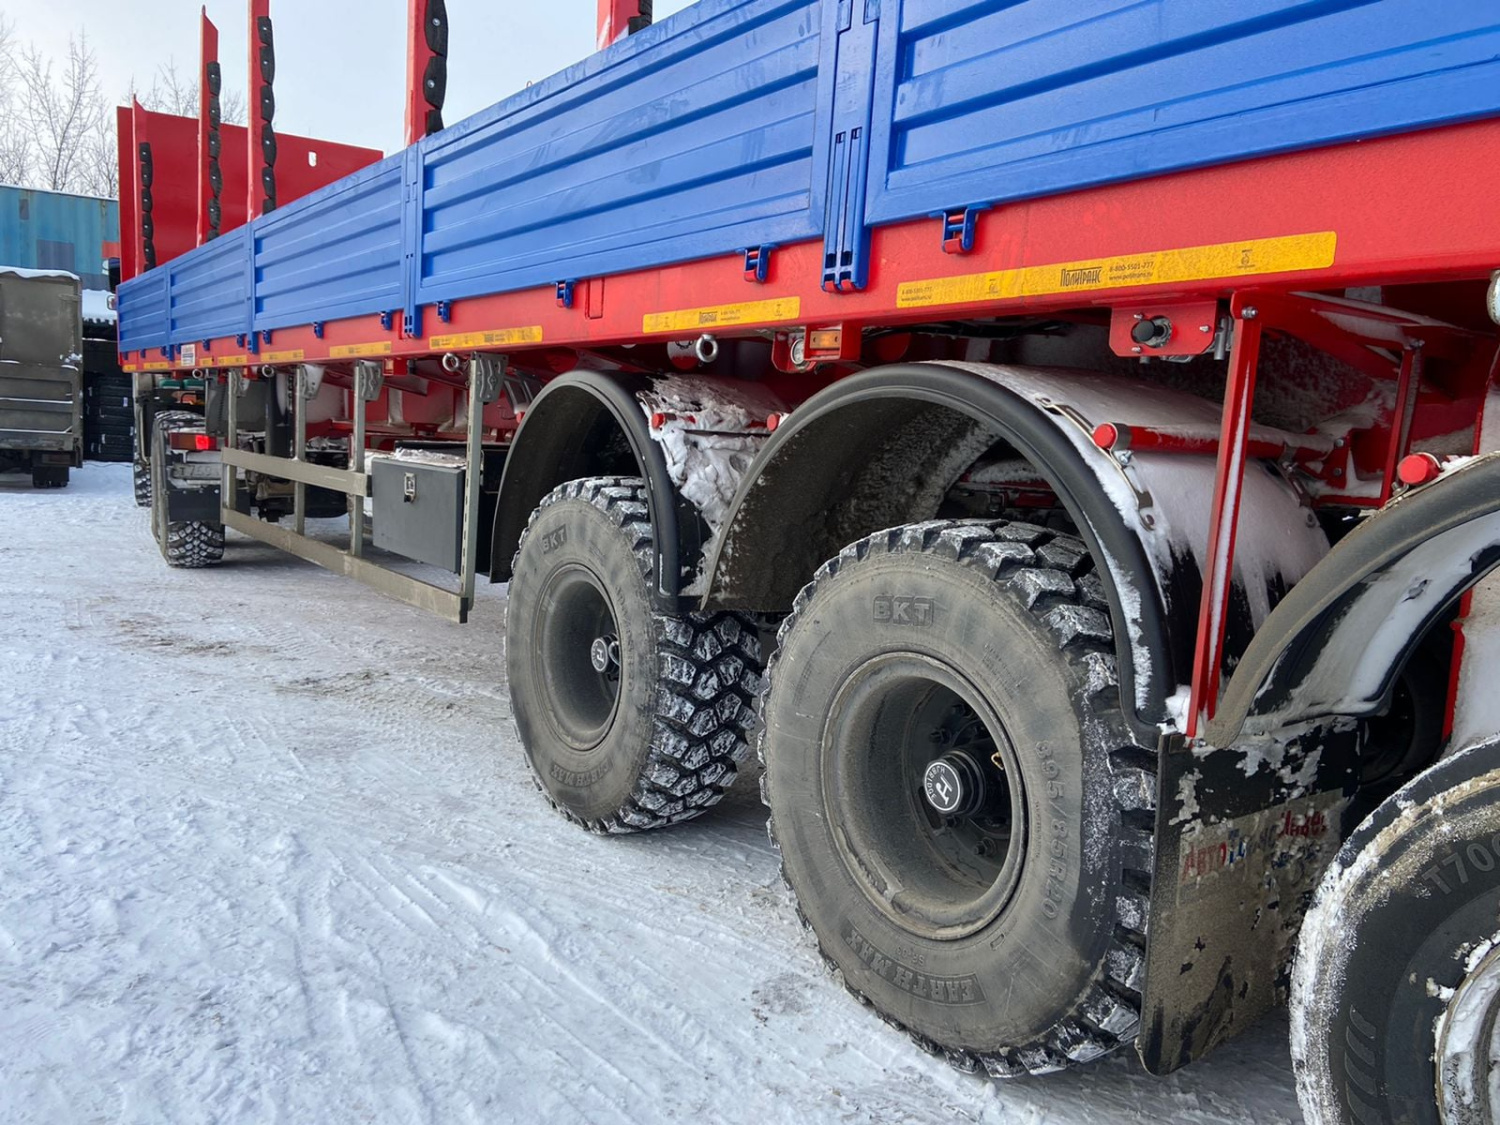 Сделано BKT:  Earthmax SR 33 - это радиальные шины для грузовиков и прицепов работающих на мягком грунте и снежном покрытии.